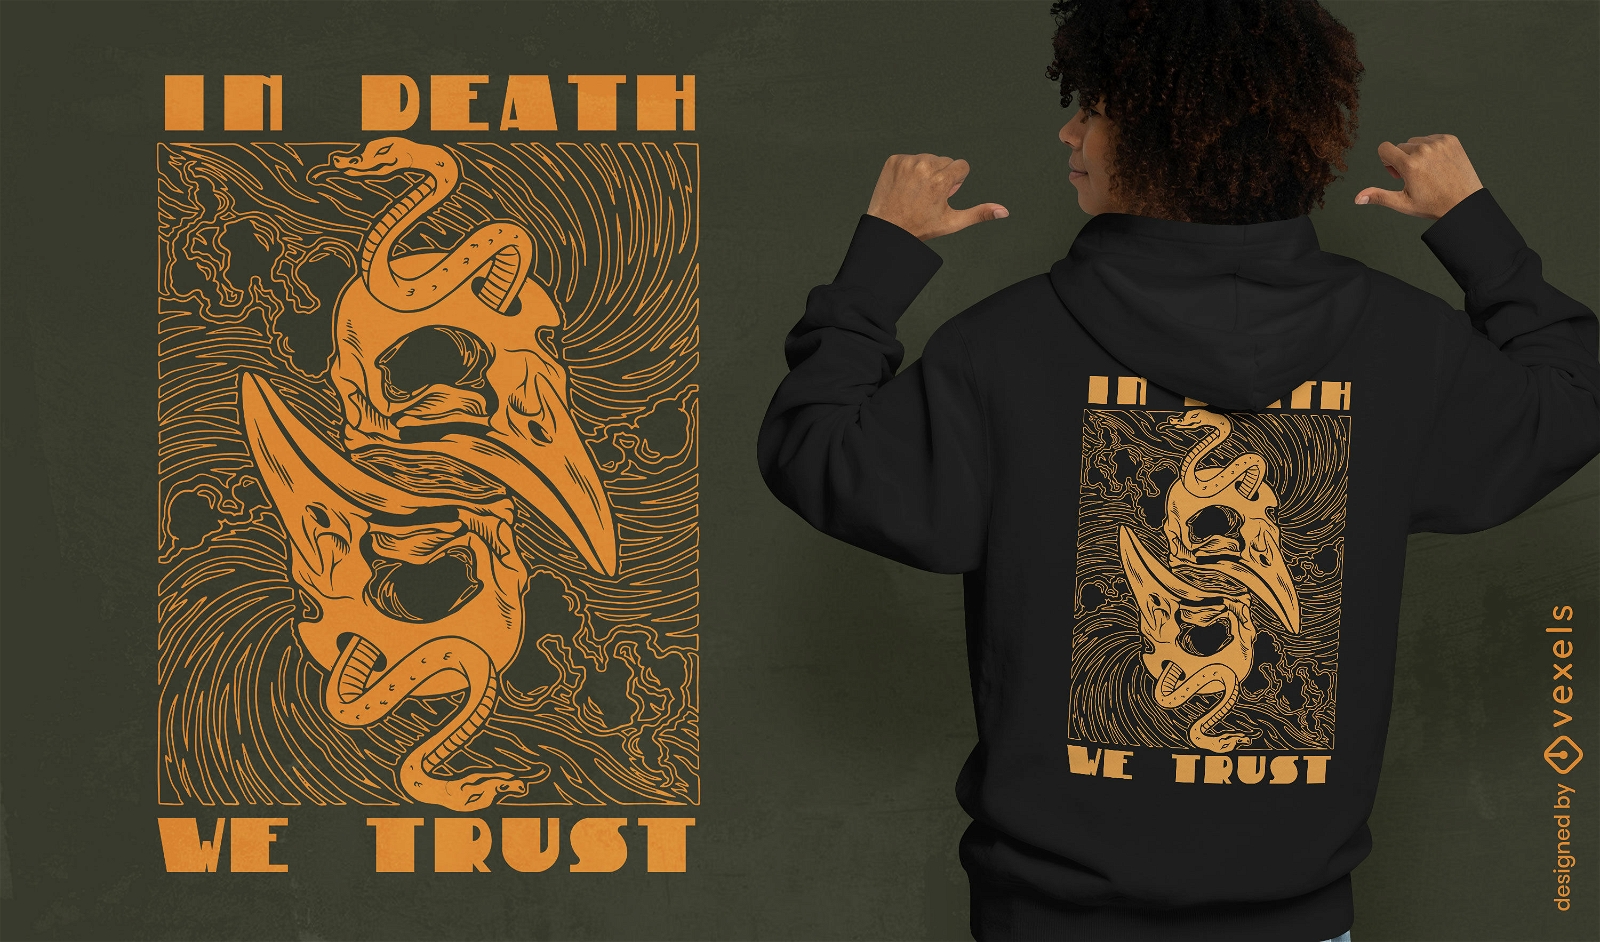 En la muerte confiamos en el dise?o de la camiseta.